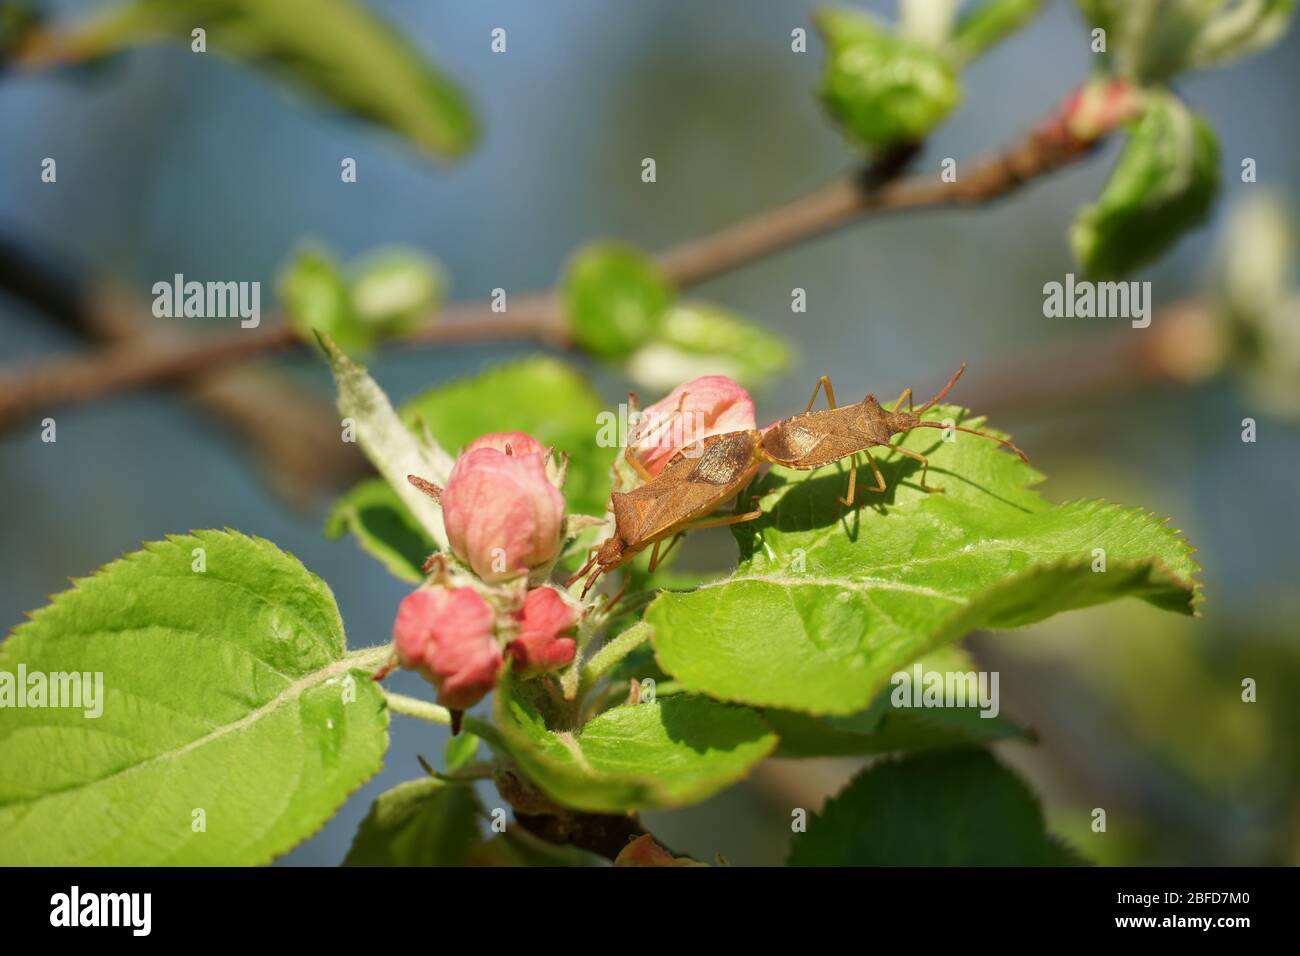 Zwei stinkende Käfer oder Schildkäfer, die im Frühjahr einen blühenden Apfelbaumzweig als Symbol oder Wiederbelebung und neues Leben und Aufschub verpaaren Stockfoto